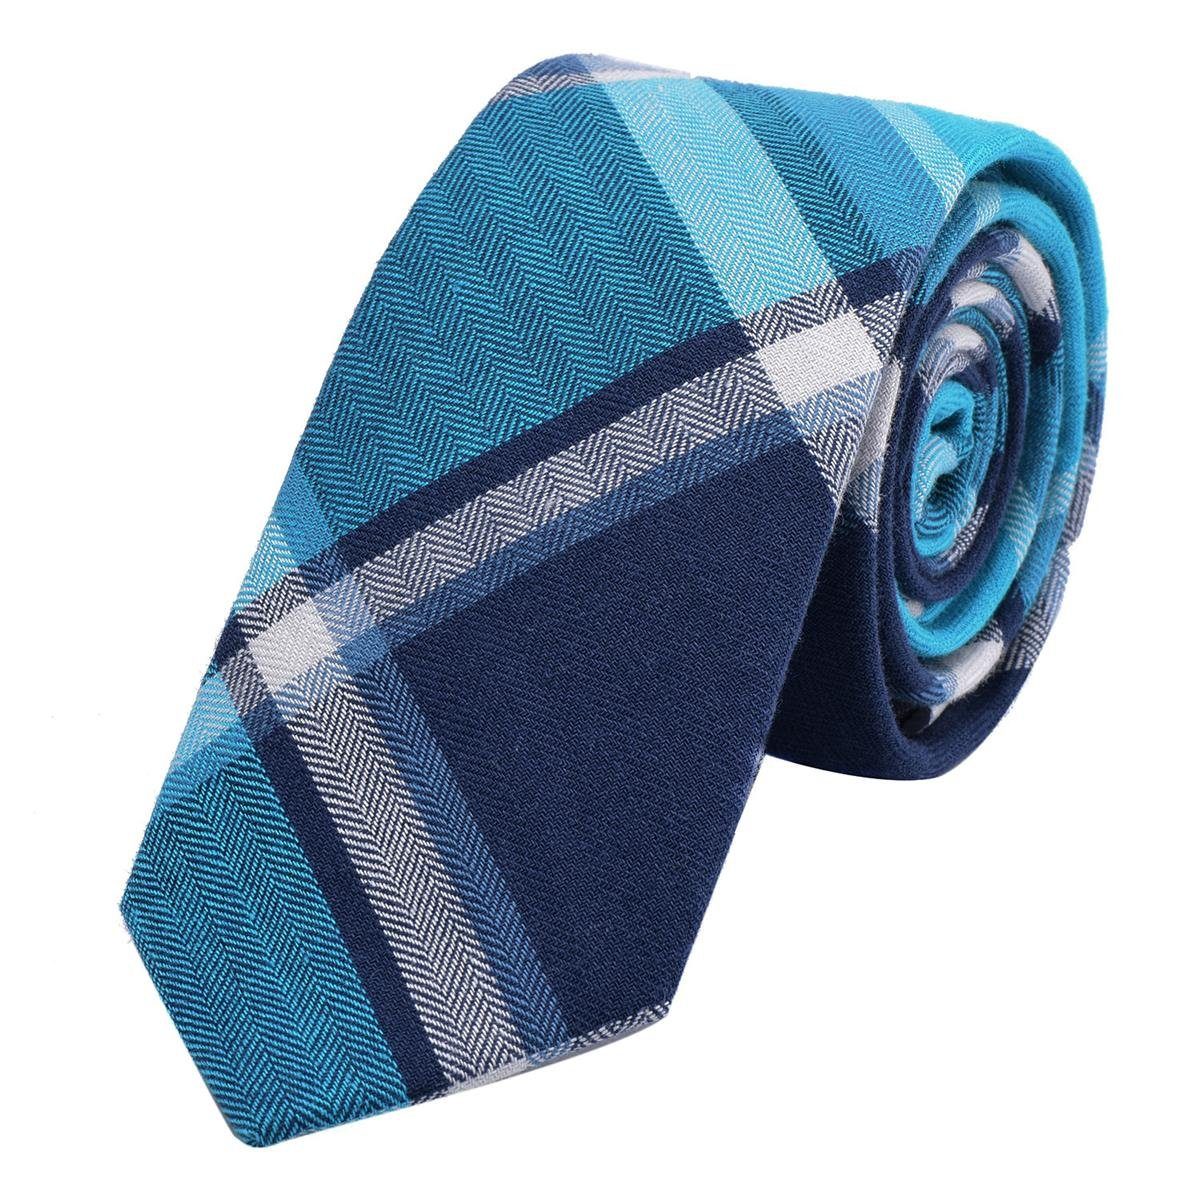 DonDon Krawatte Herren Krawatte 6 cm mit Karos oder Streifen (Packung, 1-St., 1x Krawatte) Baumwolle, kariert oder gestreift, für Büro oder festliche Veranstaltungen blau kariert 1